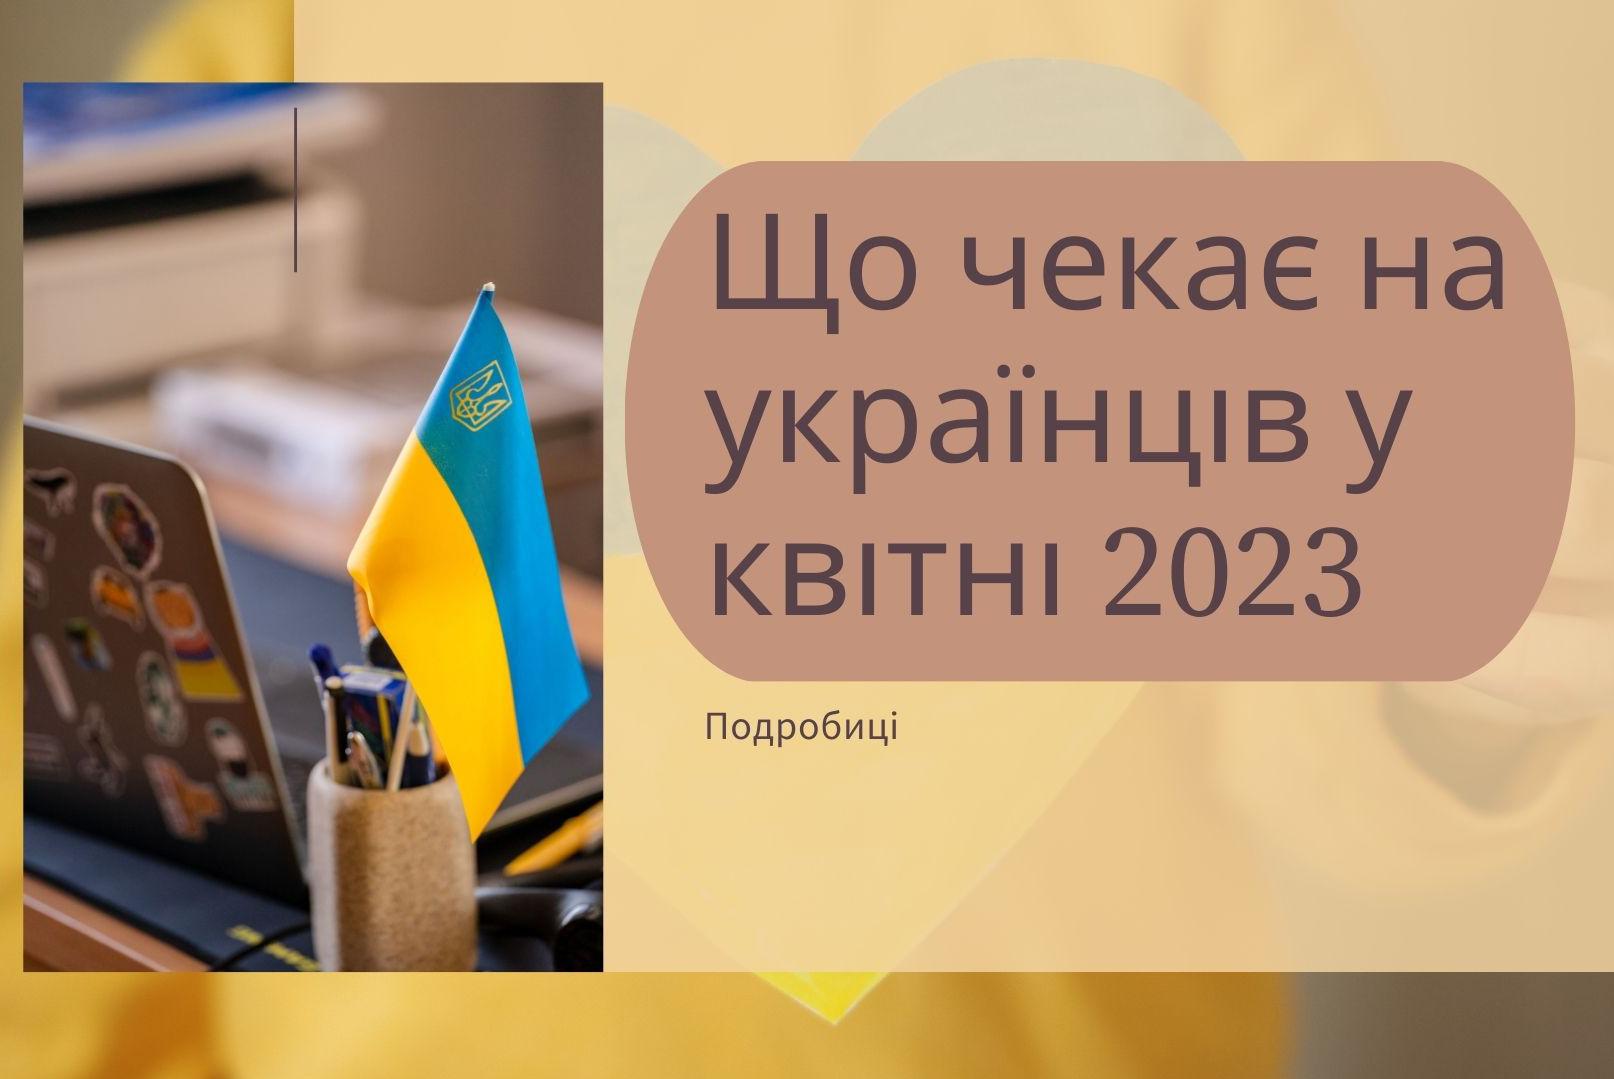 Вже з 1 квітня на українців чекає цілий ряд змін